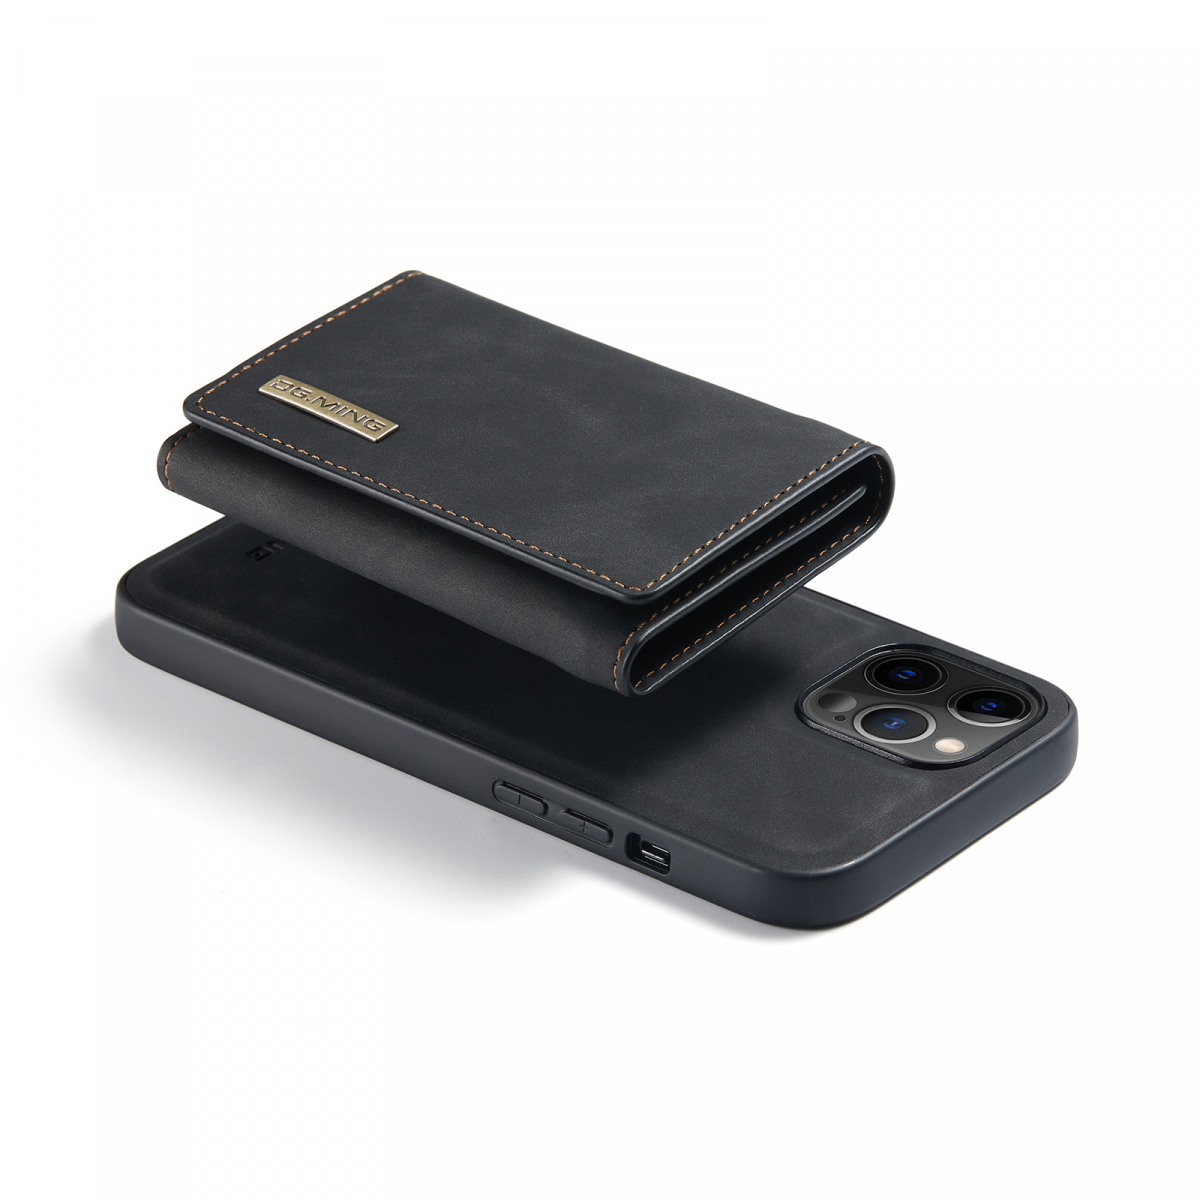 DG. MING M1-serie mobilskal till iPhone 12 Pro Max, svart